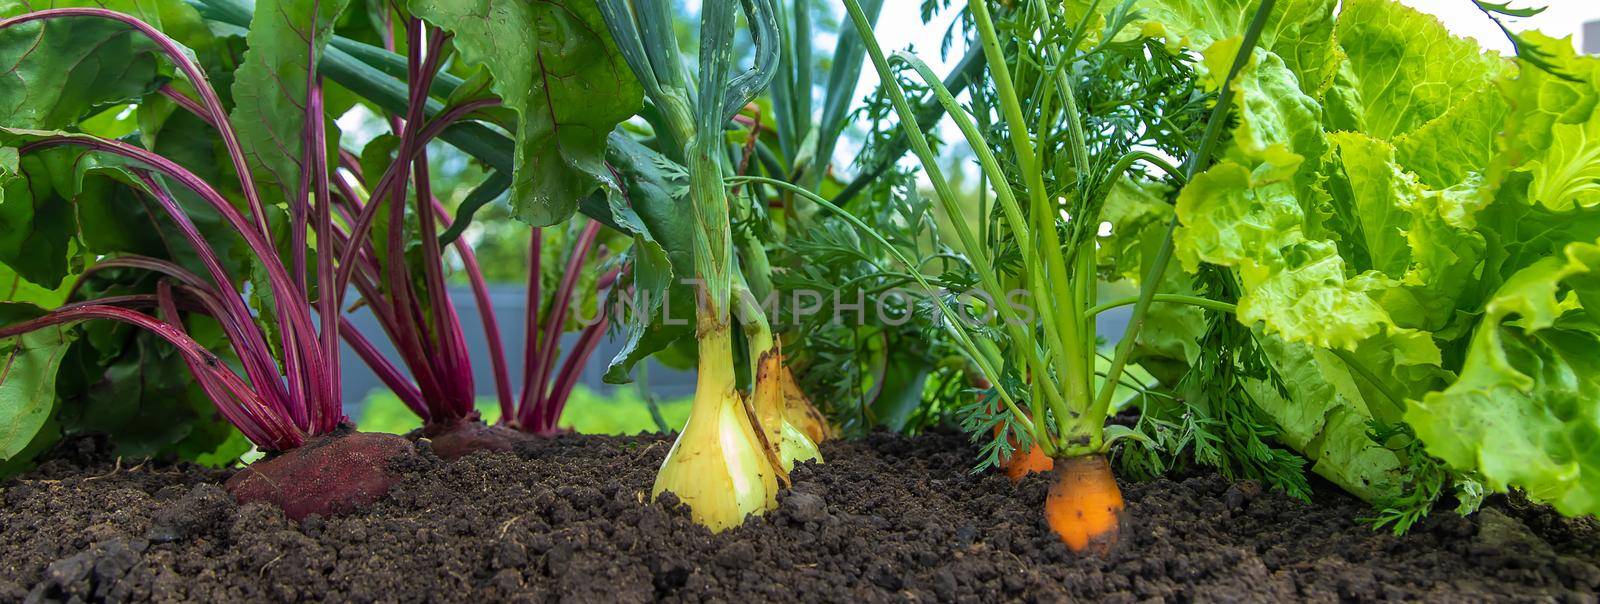 Vegetables grow in the garden. Selective focus. Food.